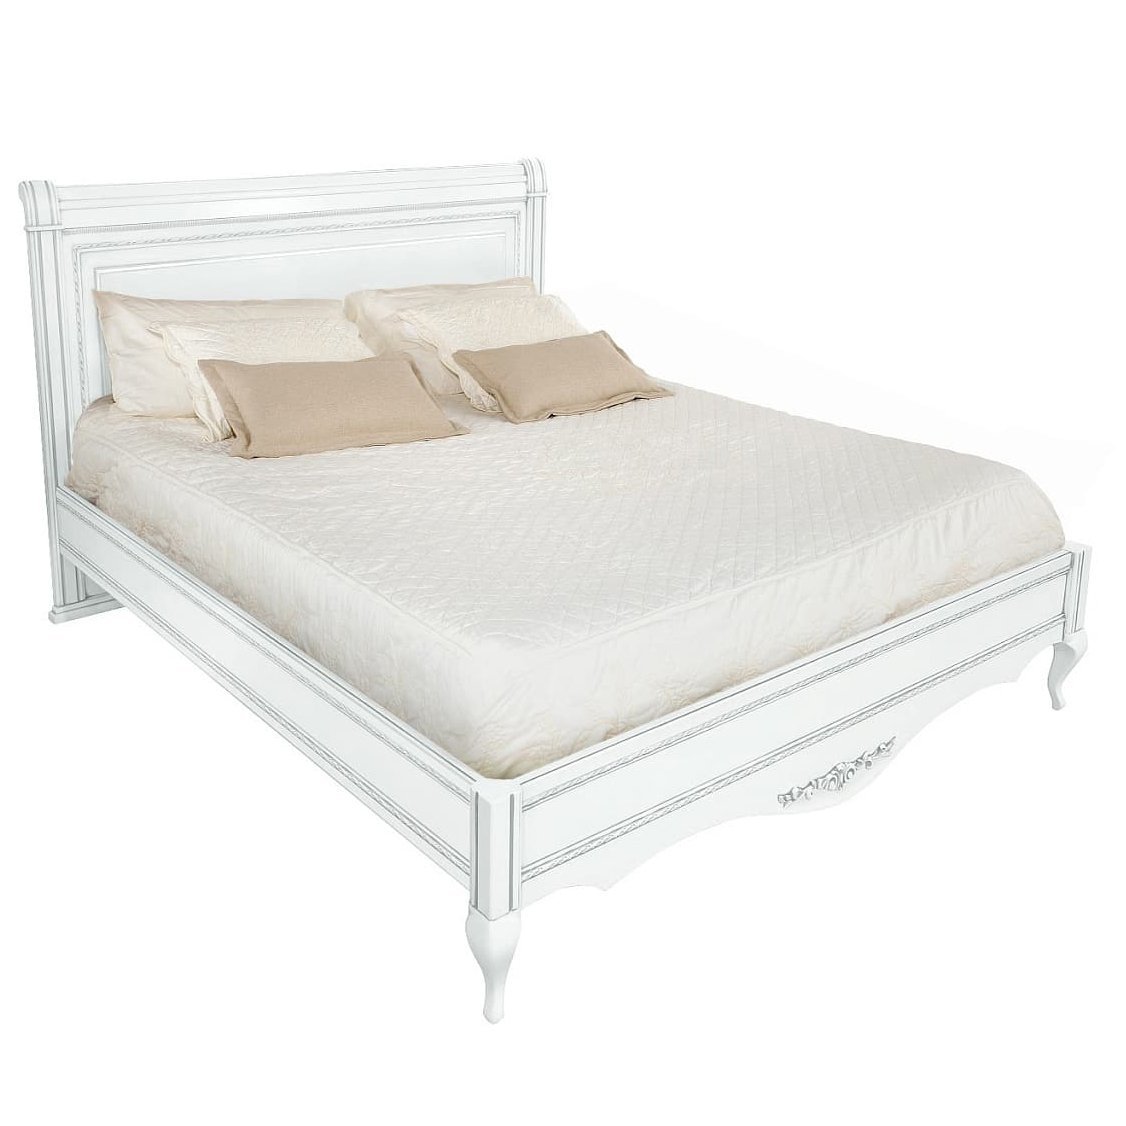 Кровать Timber Неаполь, двуспальная с мягким изголовьем 180x200 см, цвет: белый с серебром (Т-528/BA)Т-528